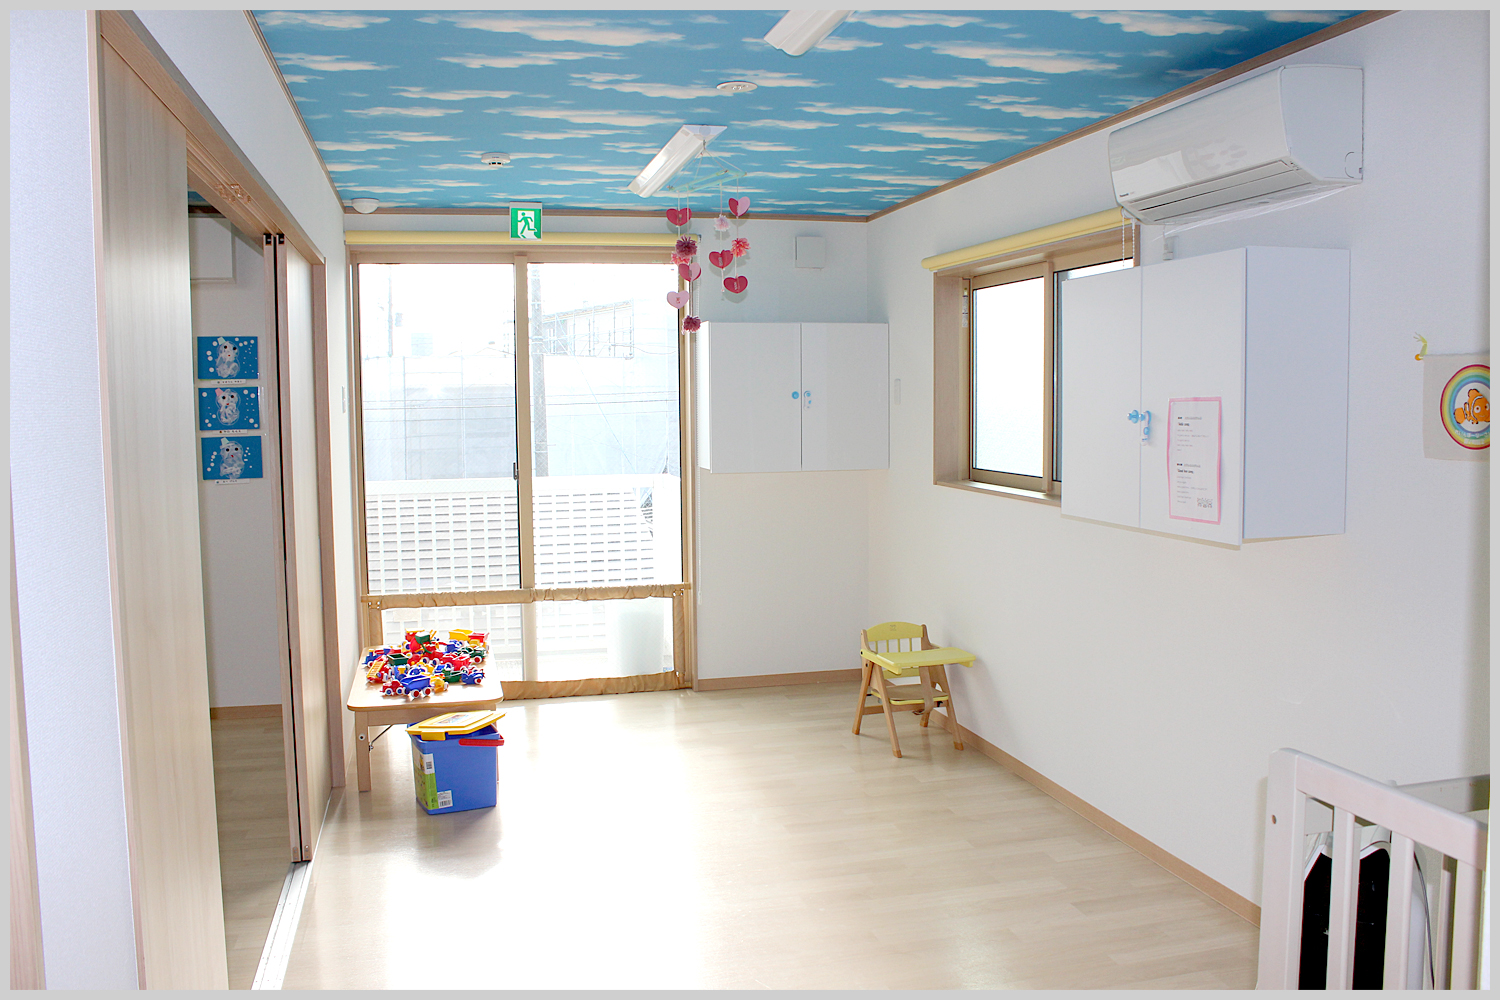 れいんぼーなーさりー原町館2の1歳児室です